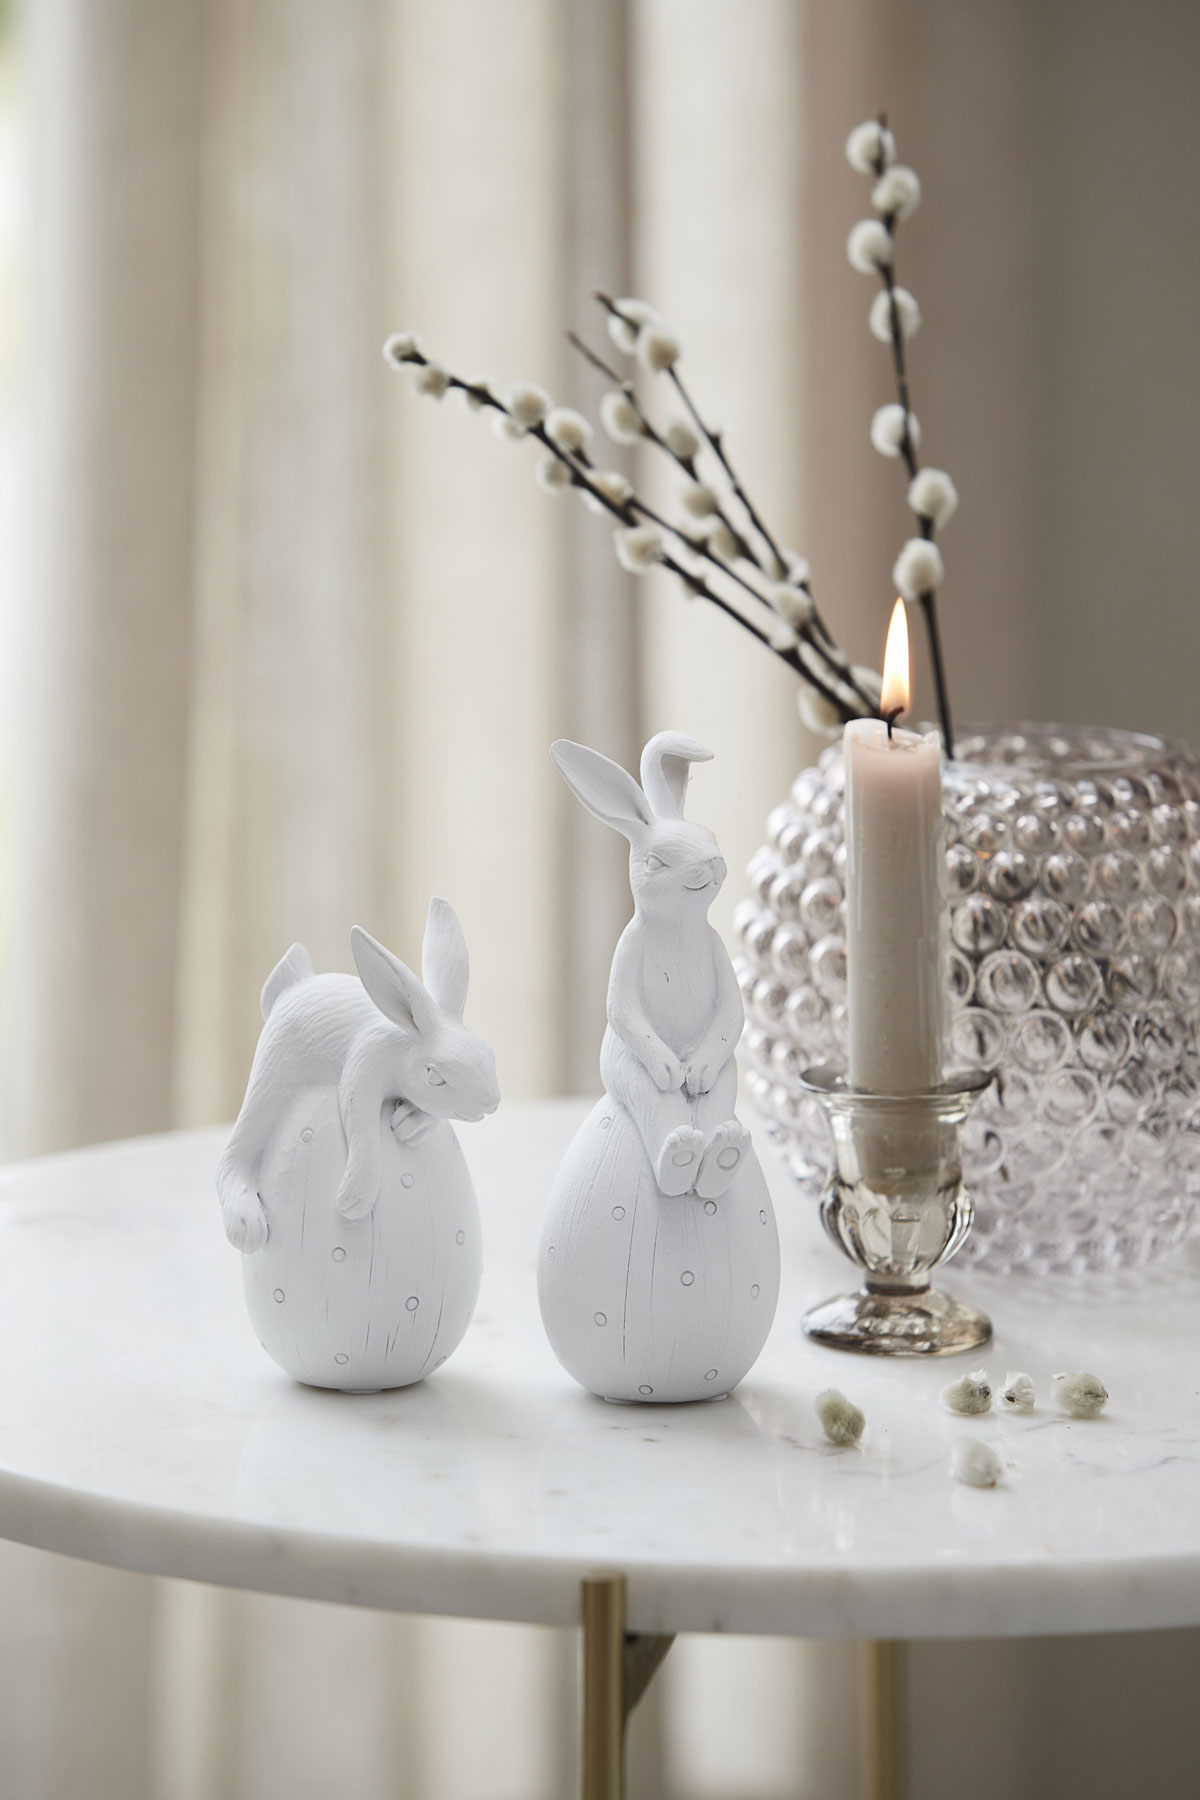 Jednoduchá veľkonočná dekorácia v podobe keramických zajačikov, sviečky a vázy s bahniatkami